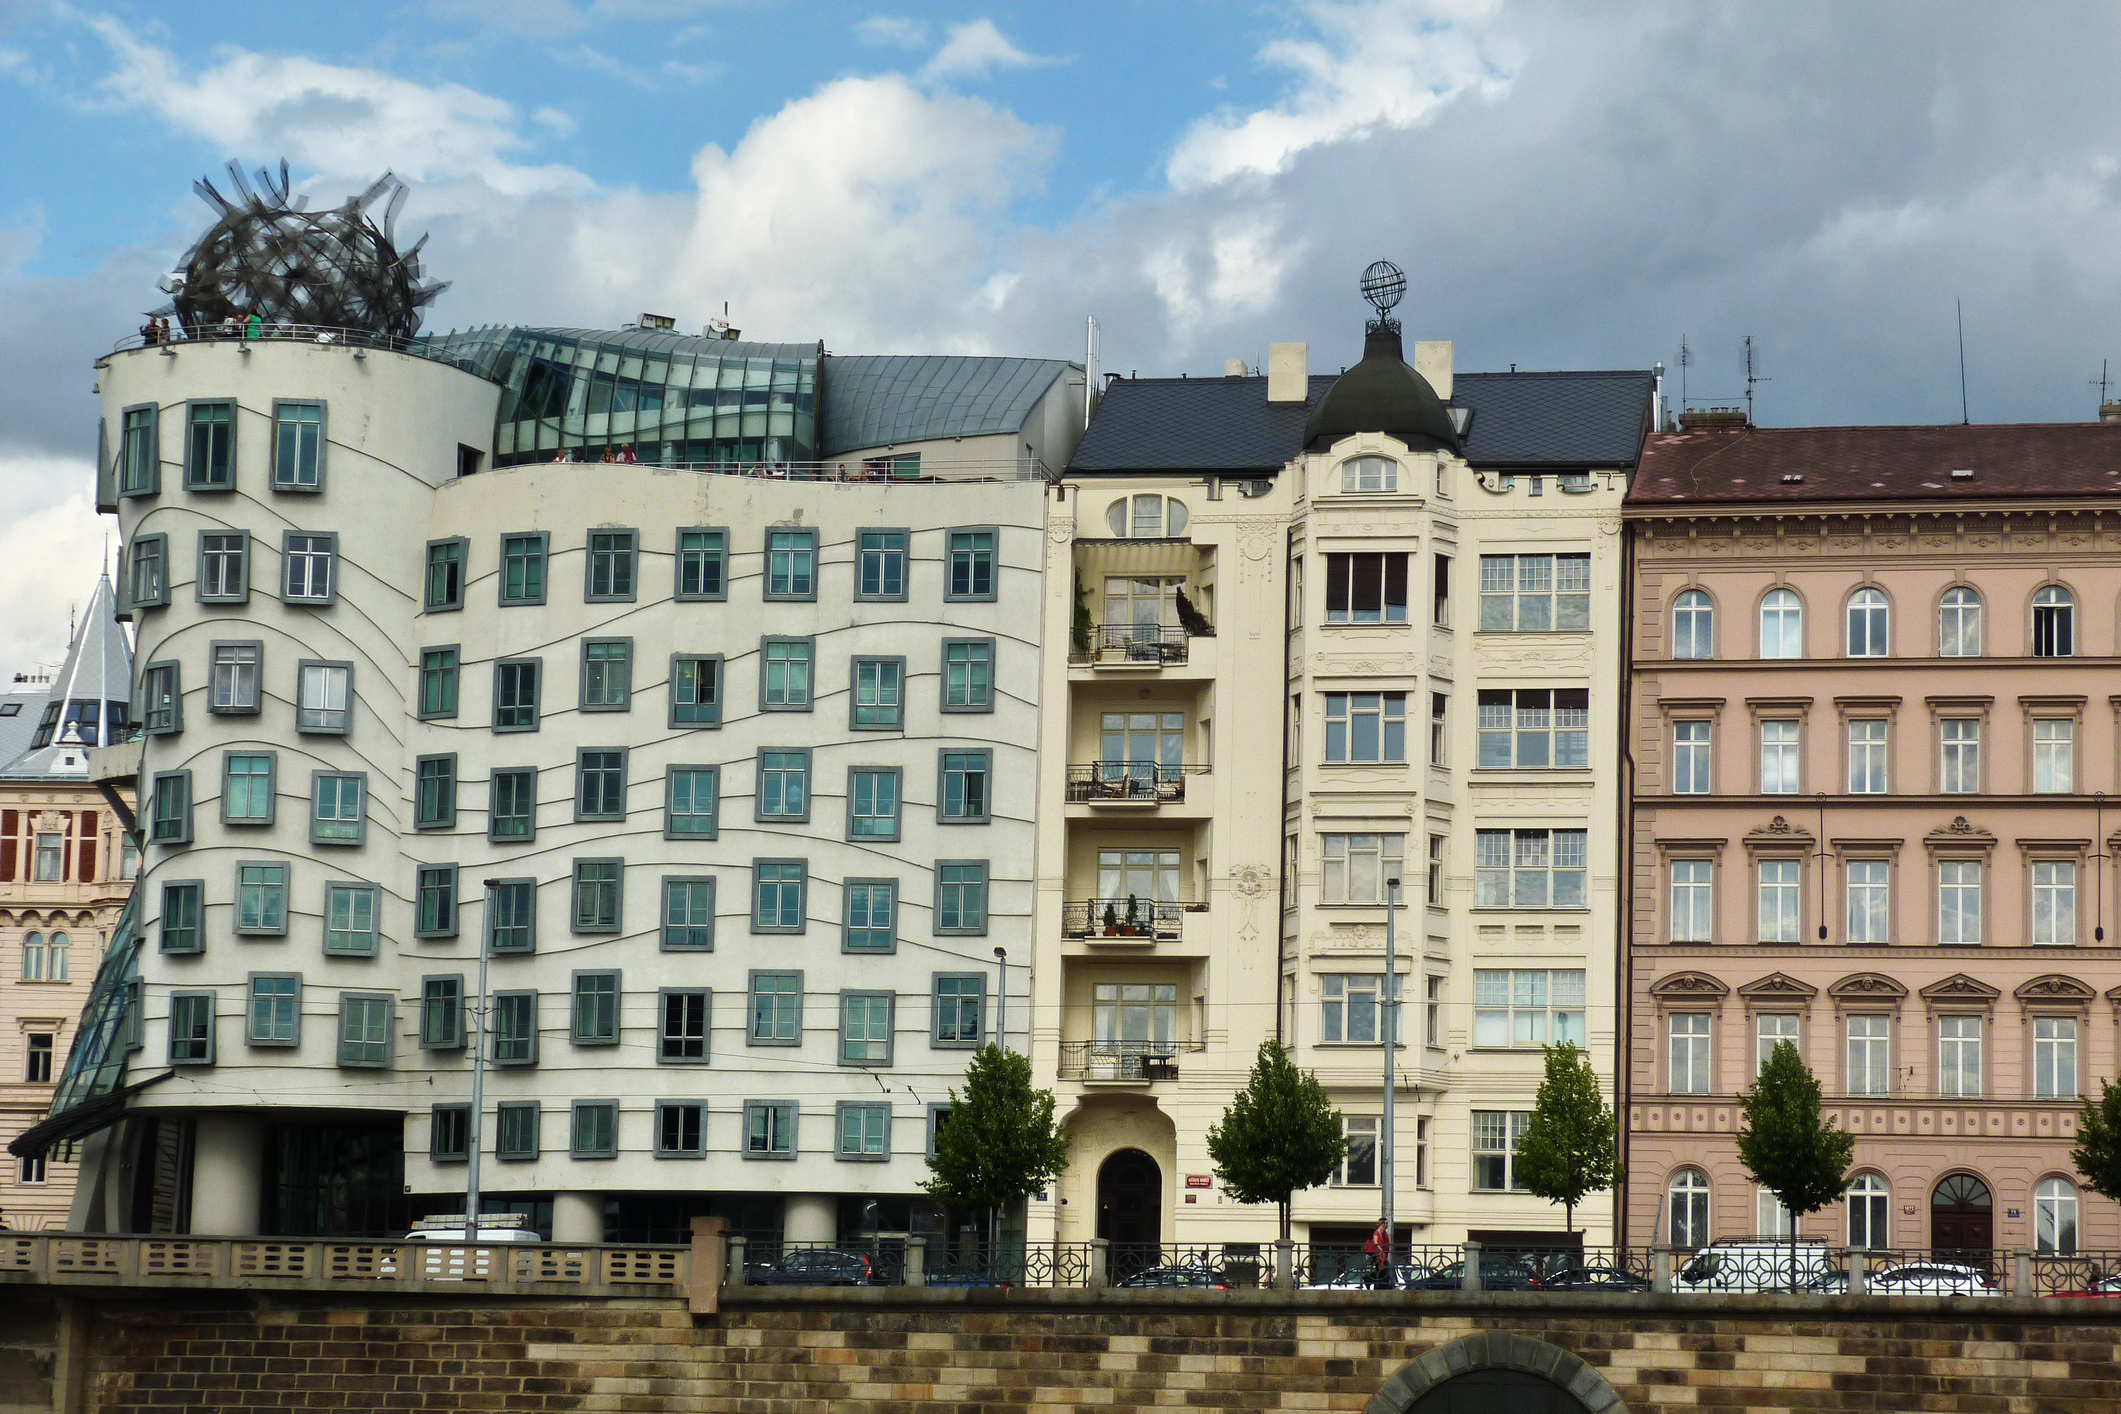 „Танцуващата къща“ е офисно здание в Прага в стил деконструктивизъм, състоящо се от две цилиндрични кули: нормална и деструктивна. „Танцуващата къща“ е архитектурна метафора на танцуваща двойка, и на шега е наричана „Джинджър и Фред”